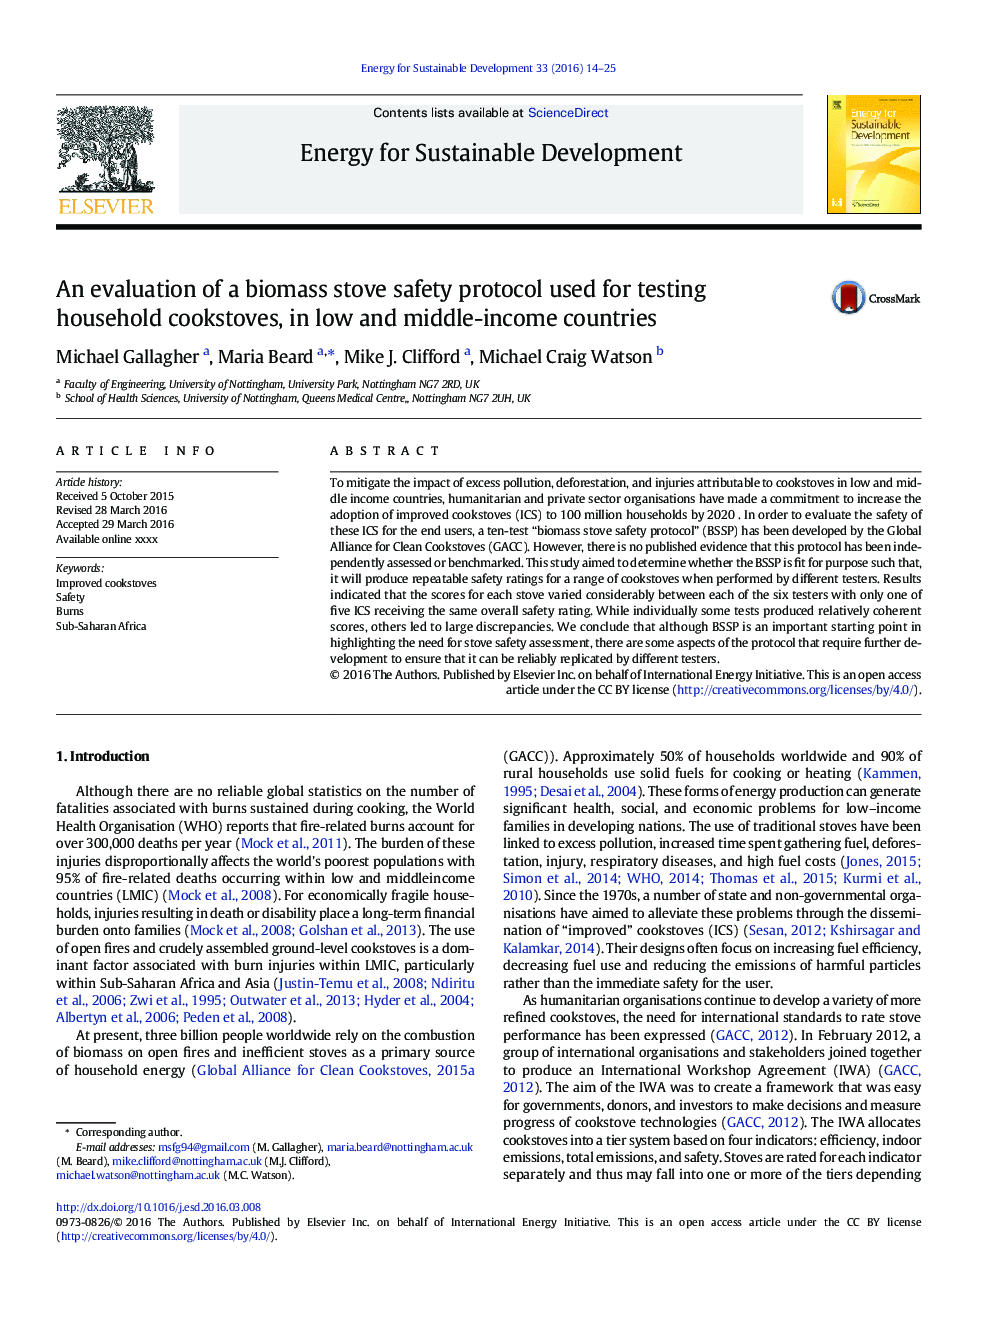 ارزیابی پروتکل ایمنی اجاق گاز زیستی مورد استفاده برای آزمایش کوکوی خانگی در کشورهای کم و متوسط 